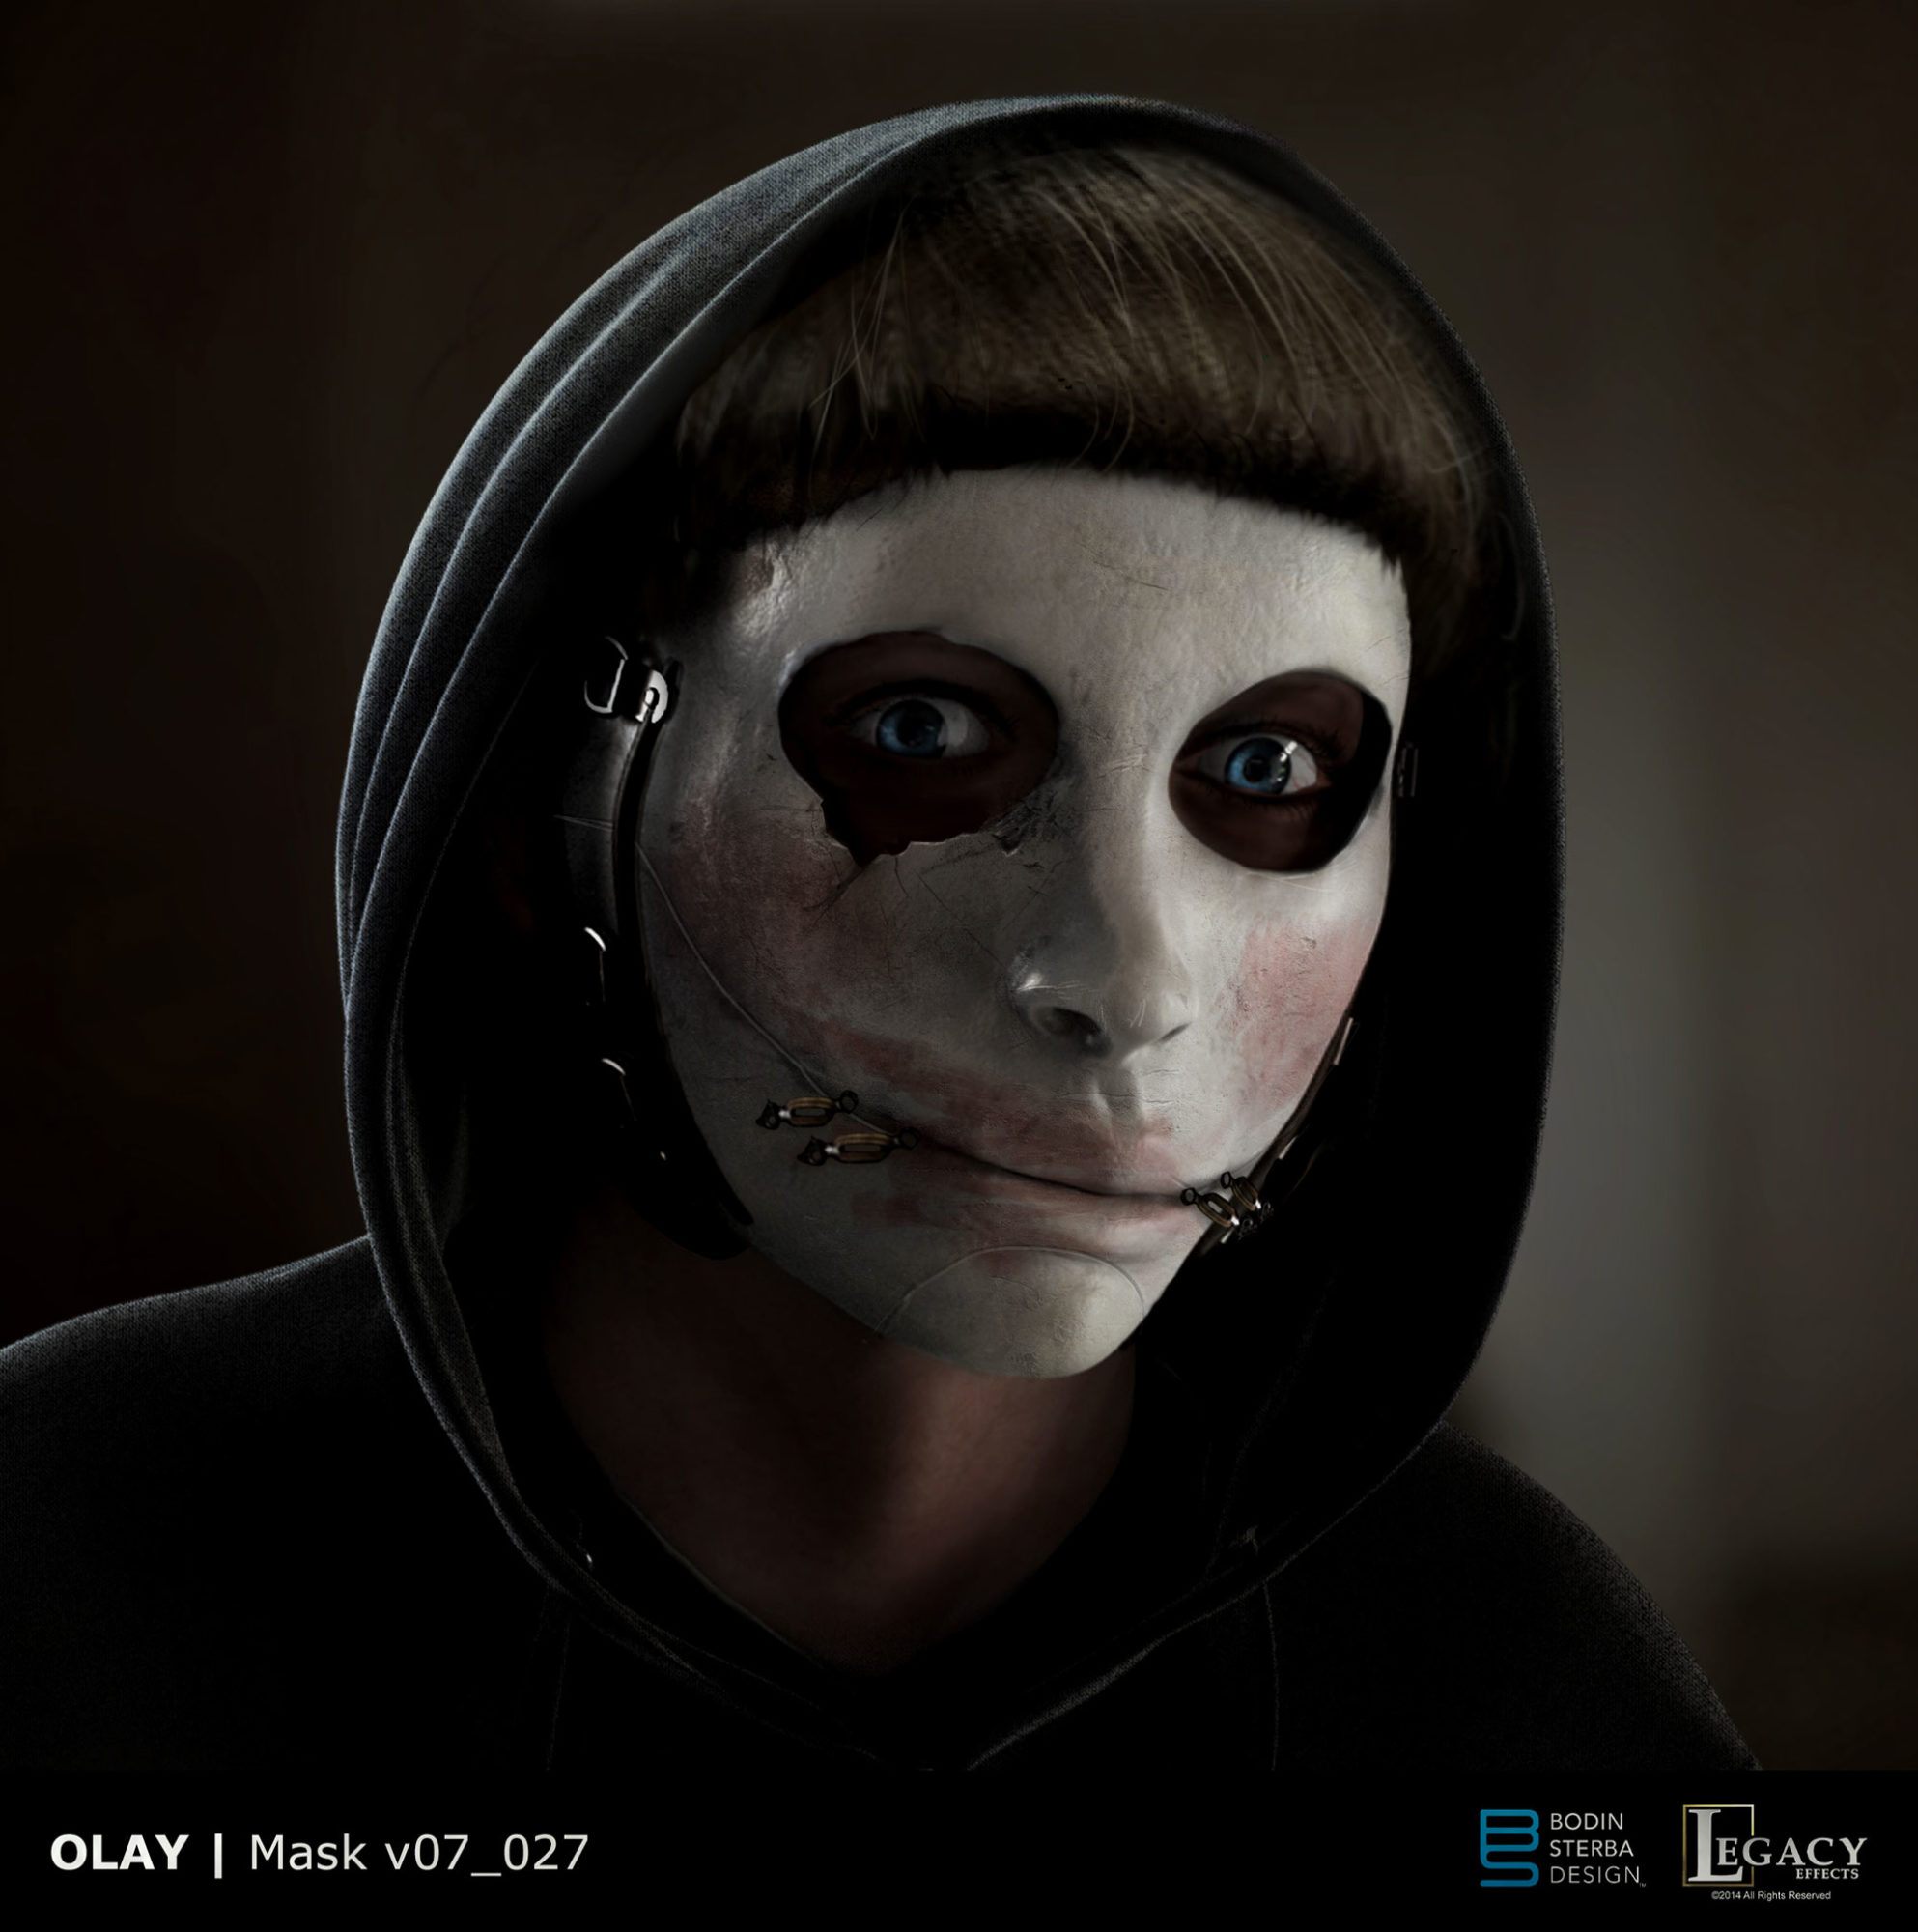 Olay mask design from "Killer Skin" Super Bowl LIII spot